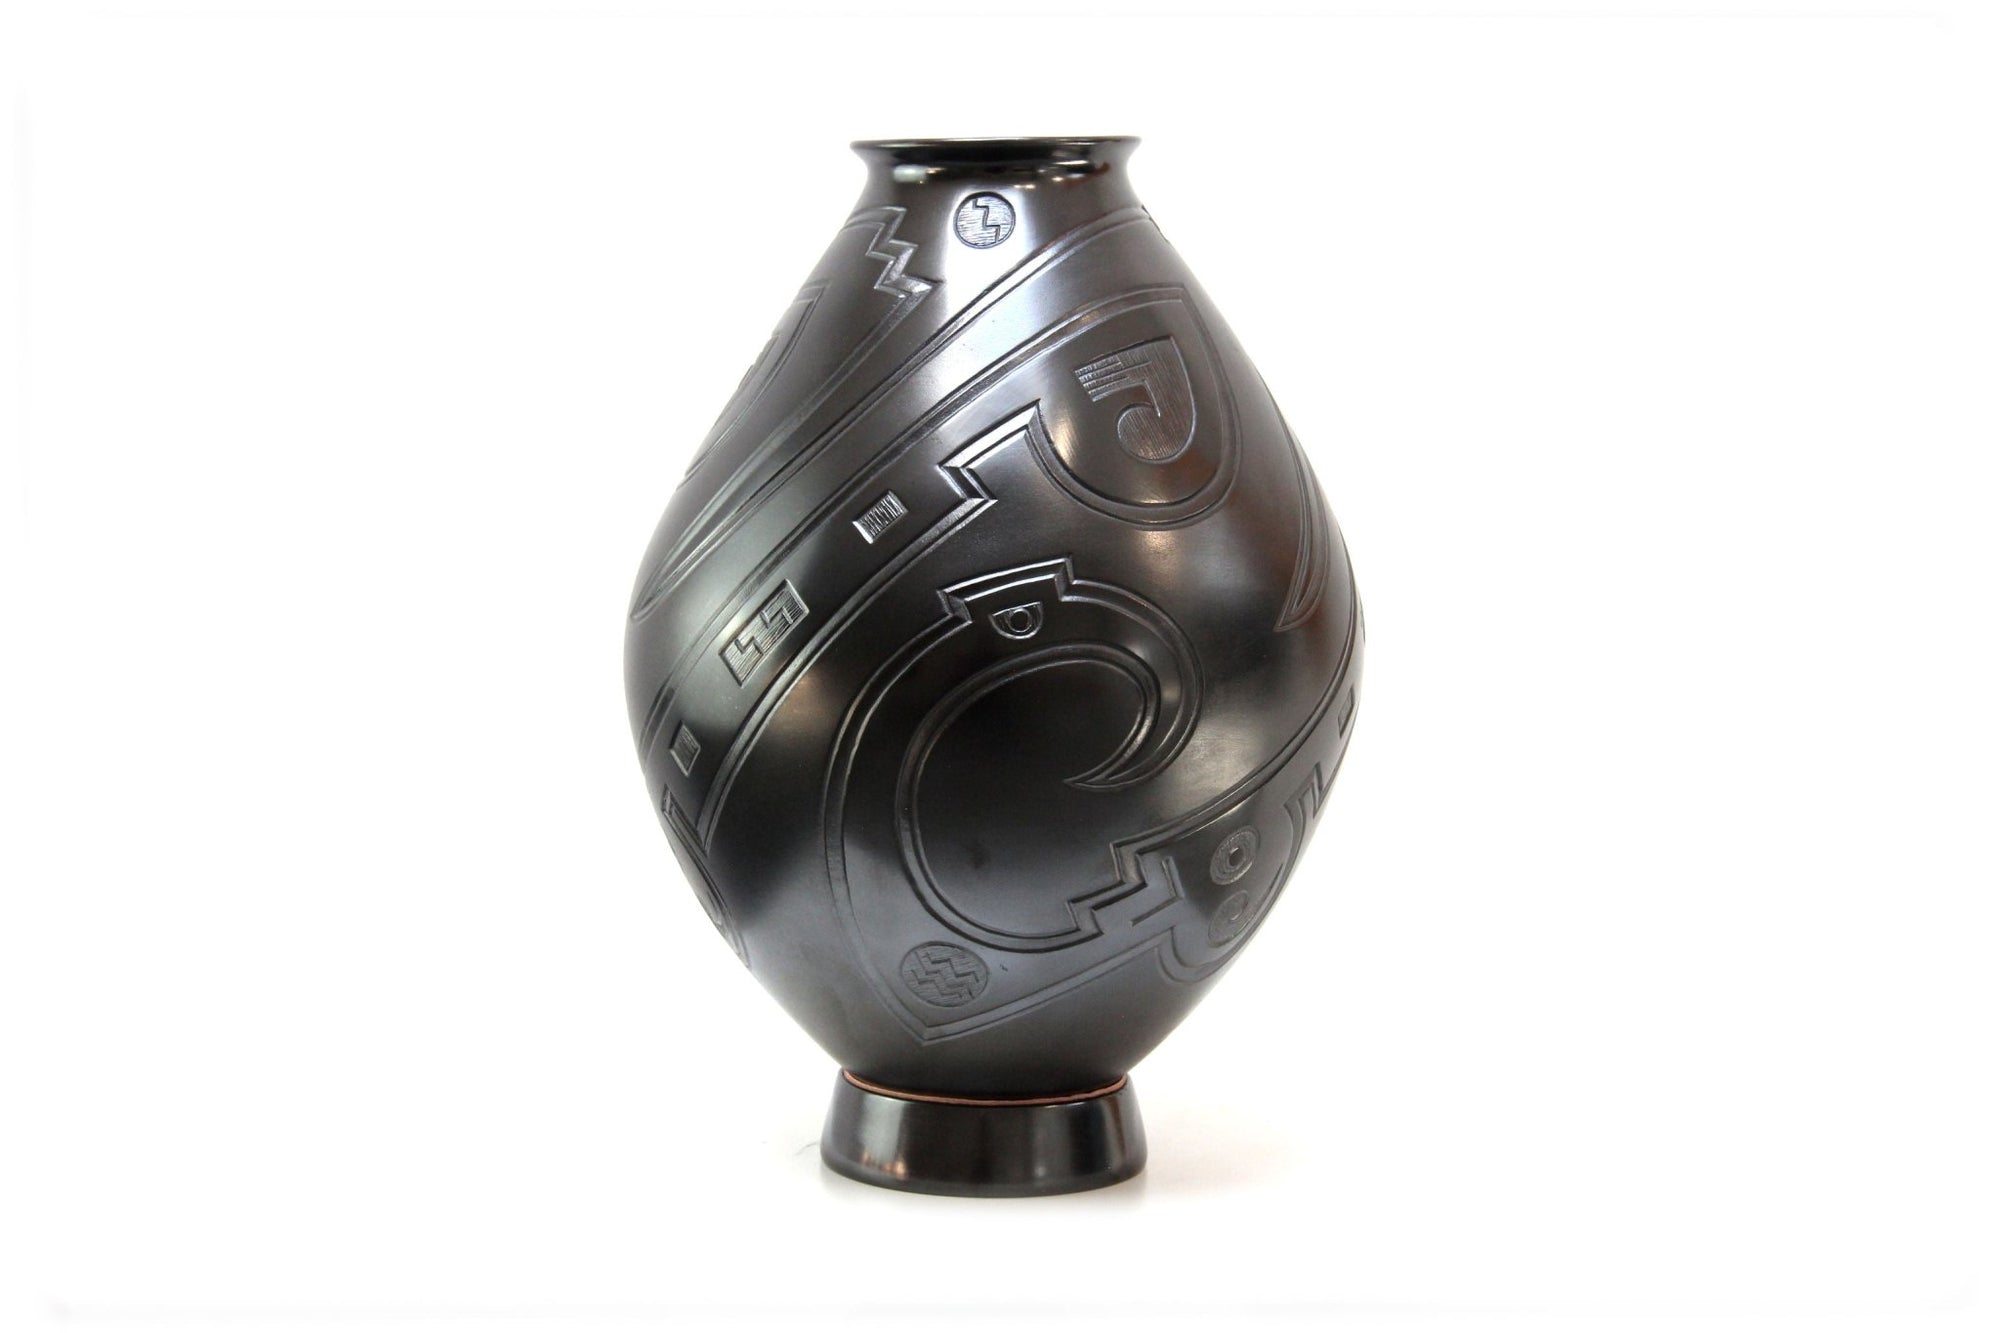 Céramique Mata Ortiz - Vase Noir III - Art Huichol - Marakame